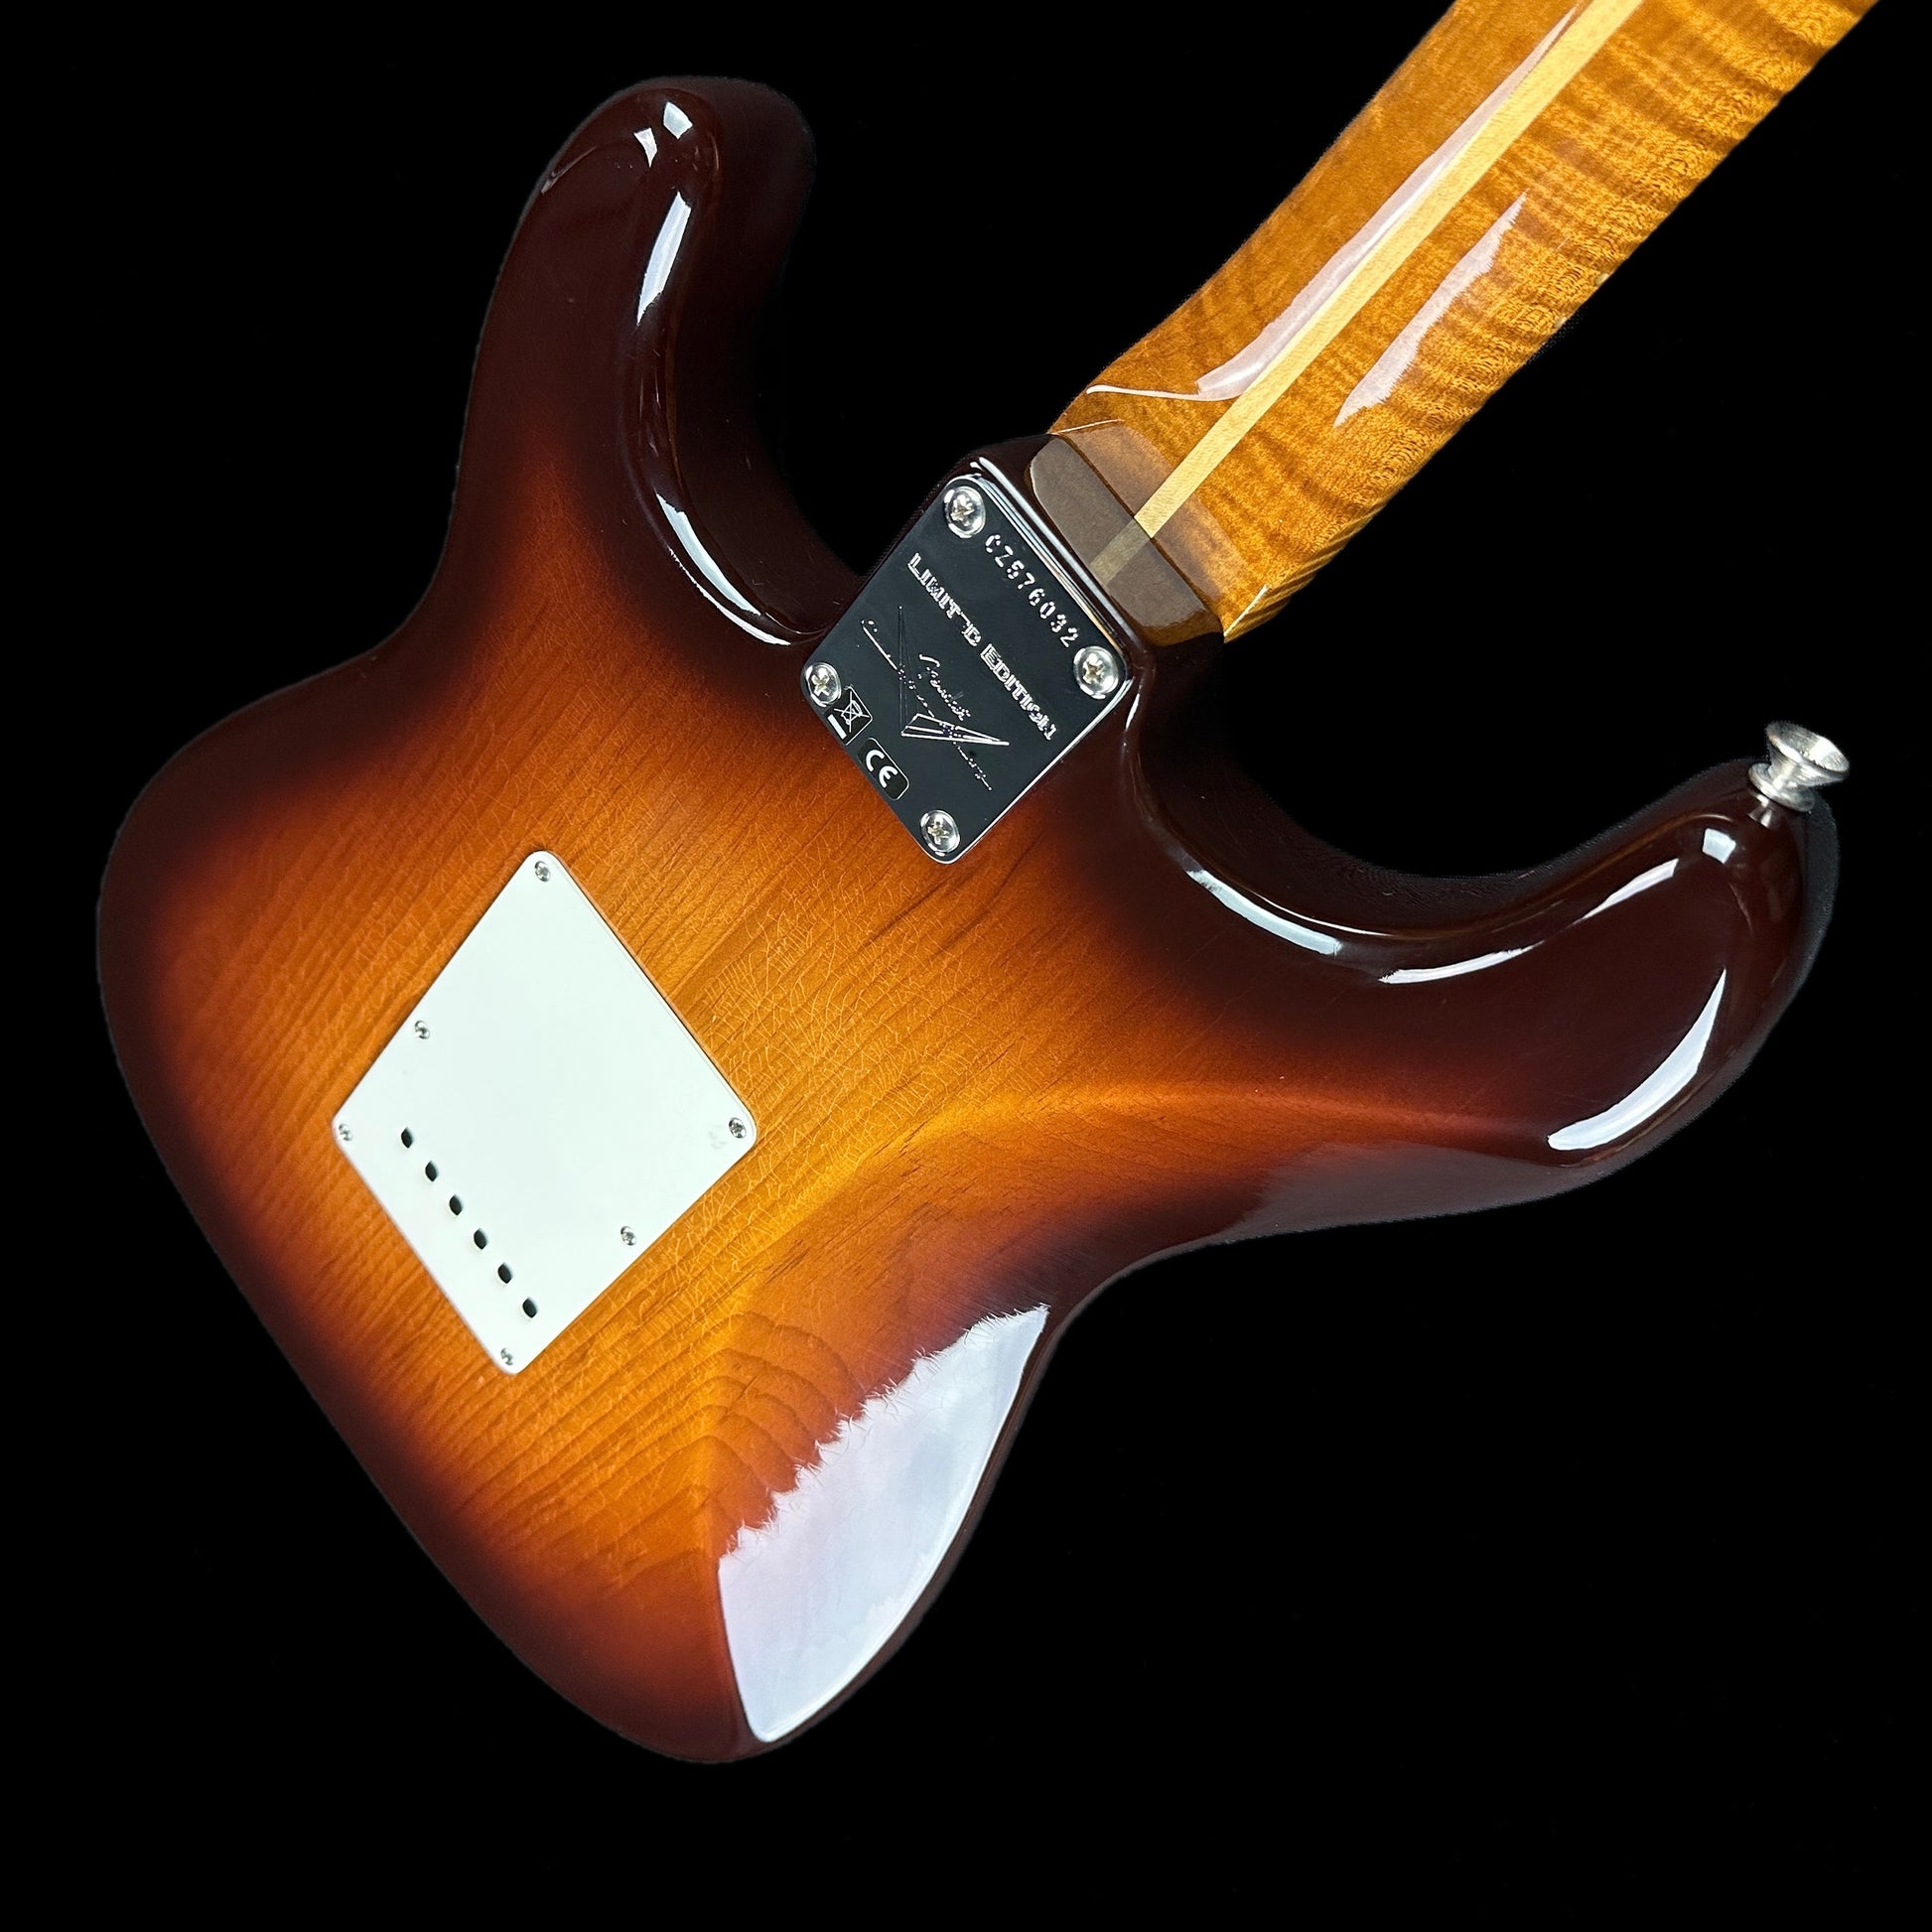 Back angle of Fender Custom Shop Limited Edition Roasted Pine Chocolate 2 Tone Sunburst.